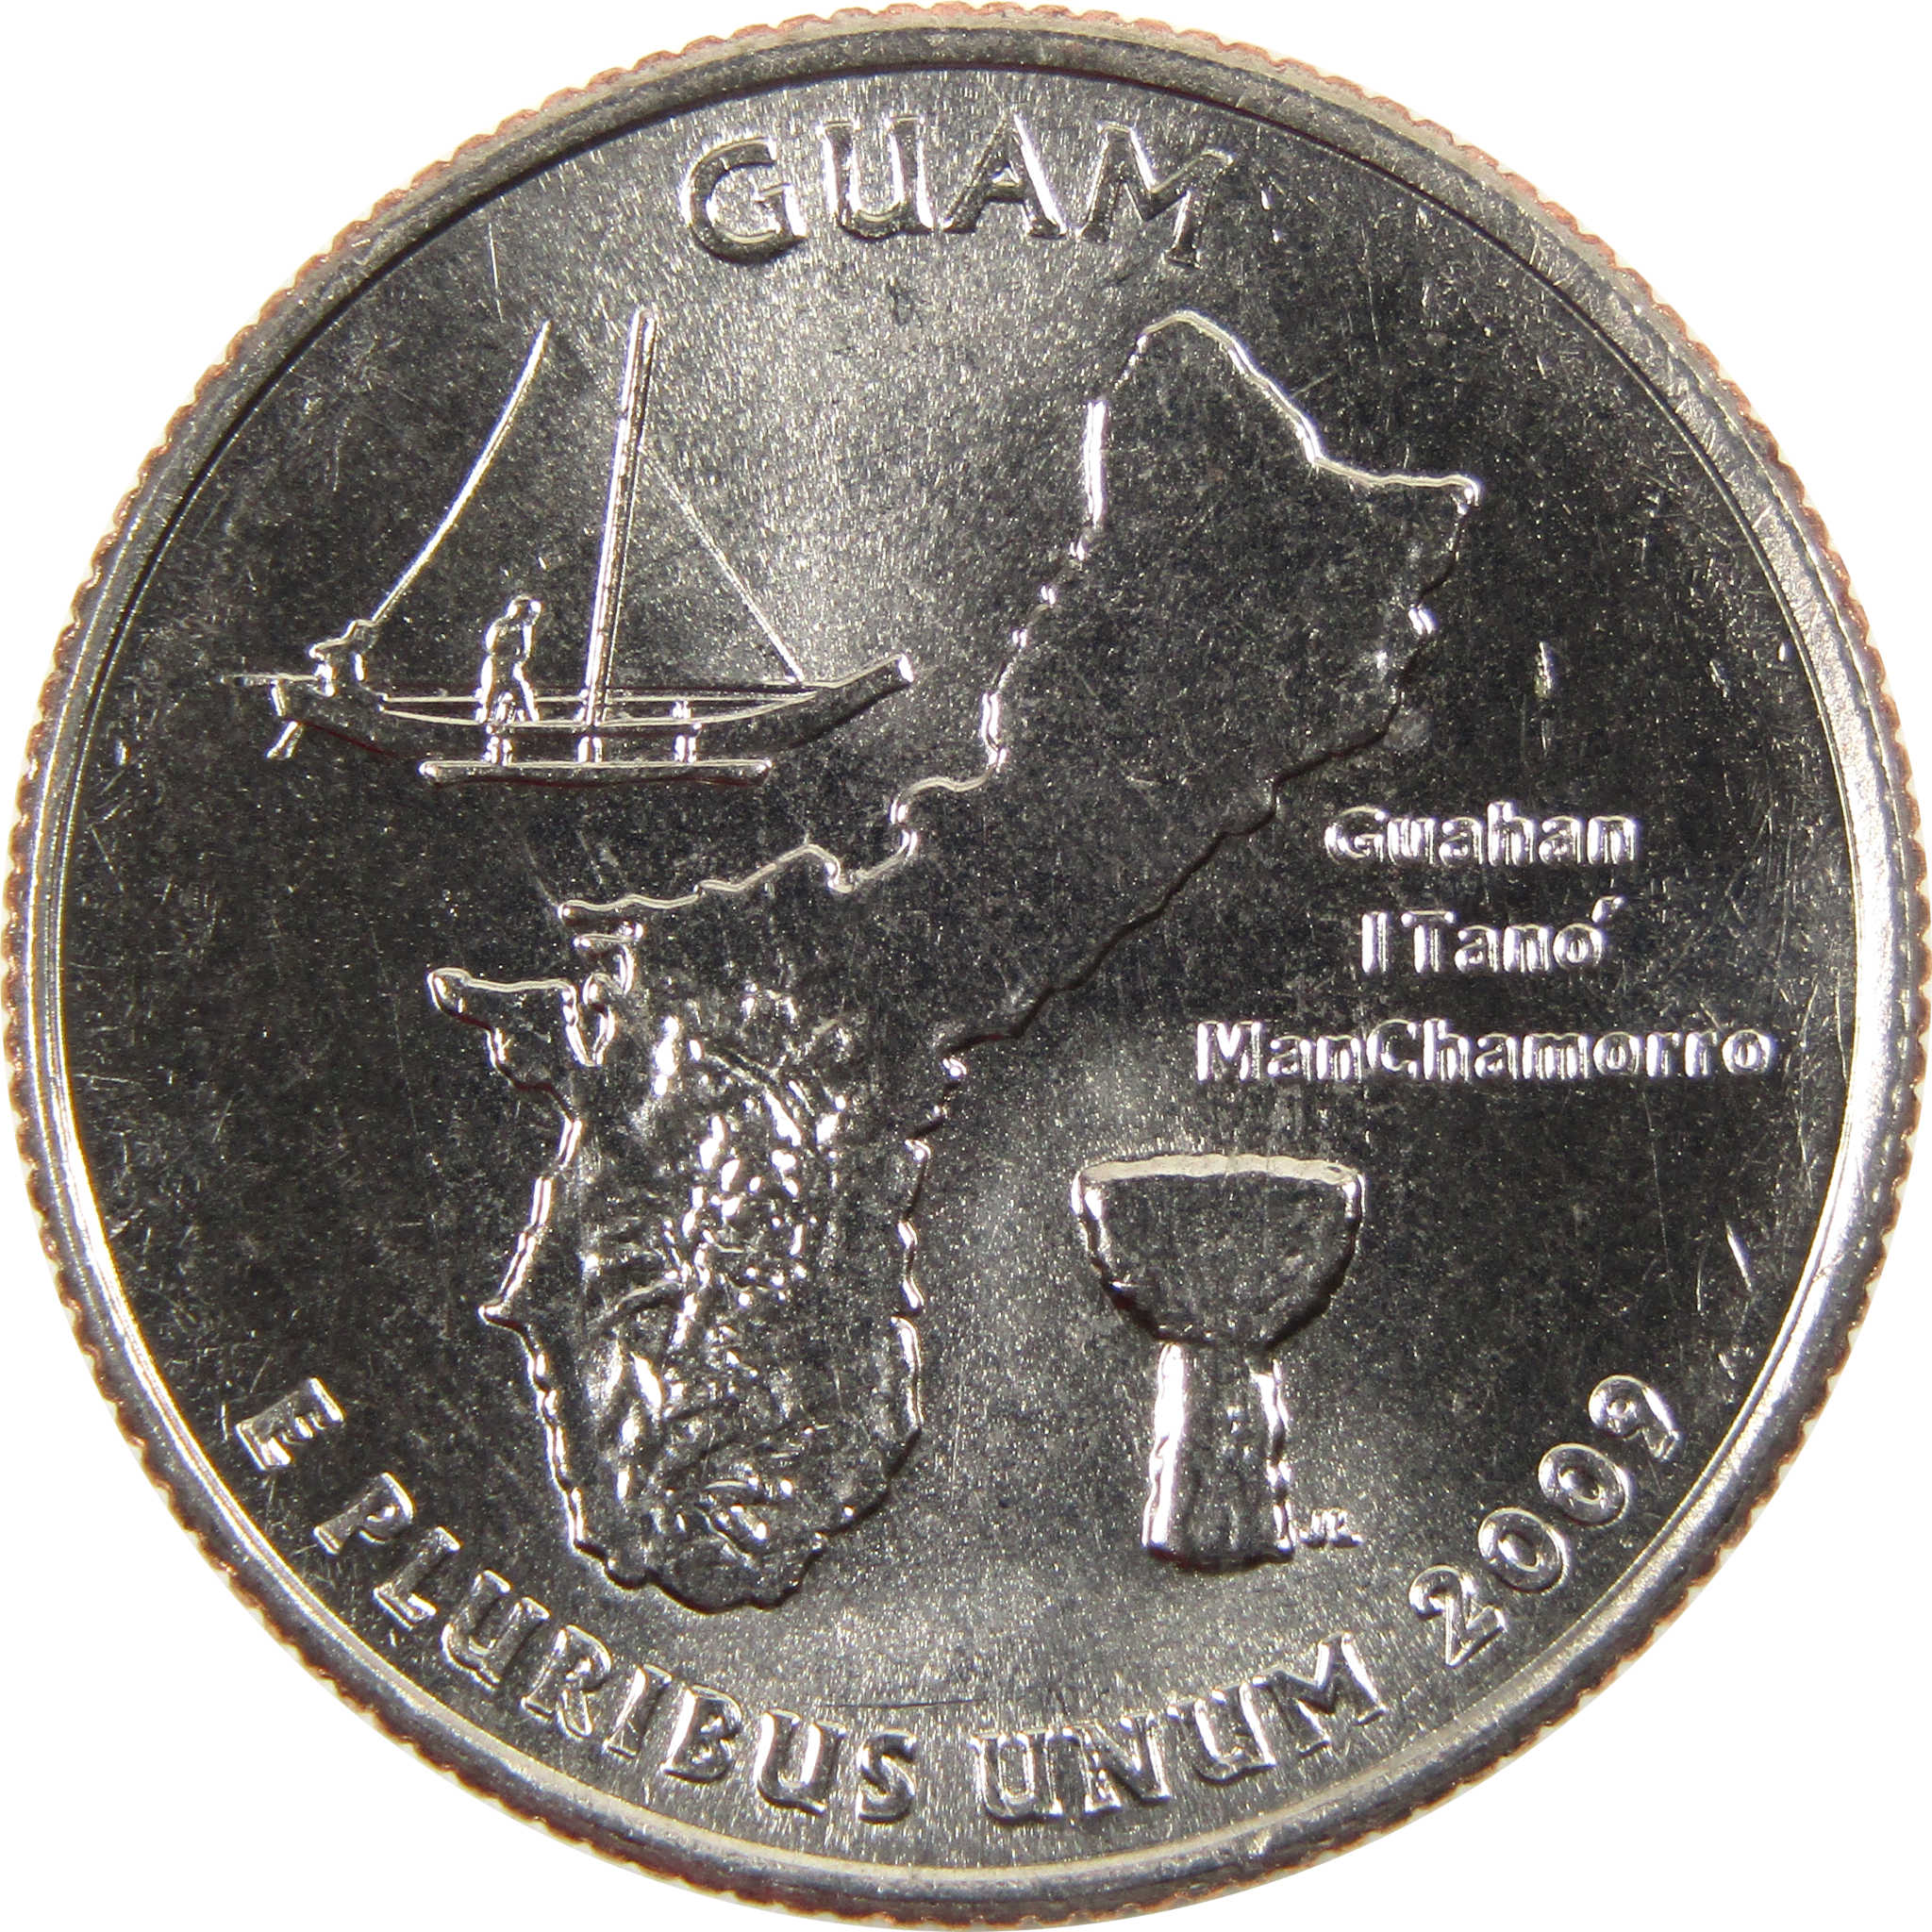 2009 D Guam DC & US Territories Quarter BU Uncirculated Clad 25c Coin